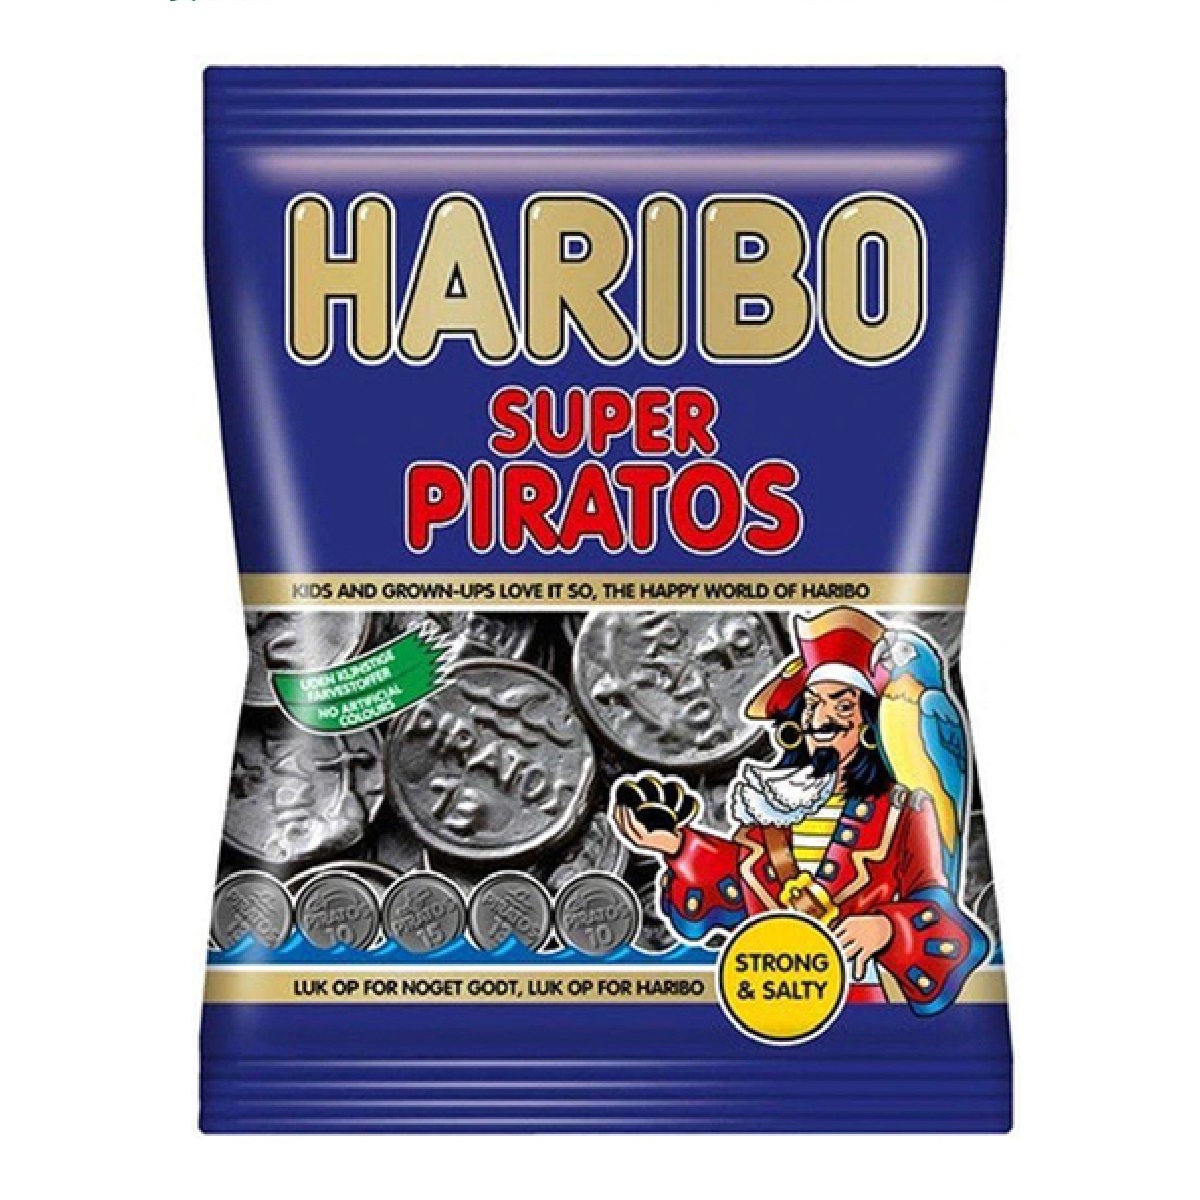 Haribo Super Piratos 120g